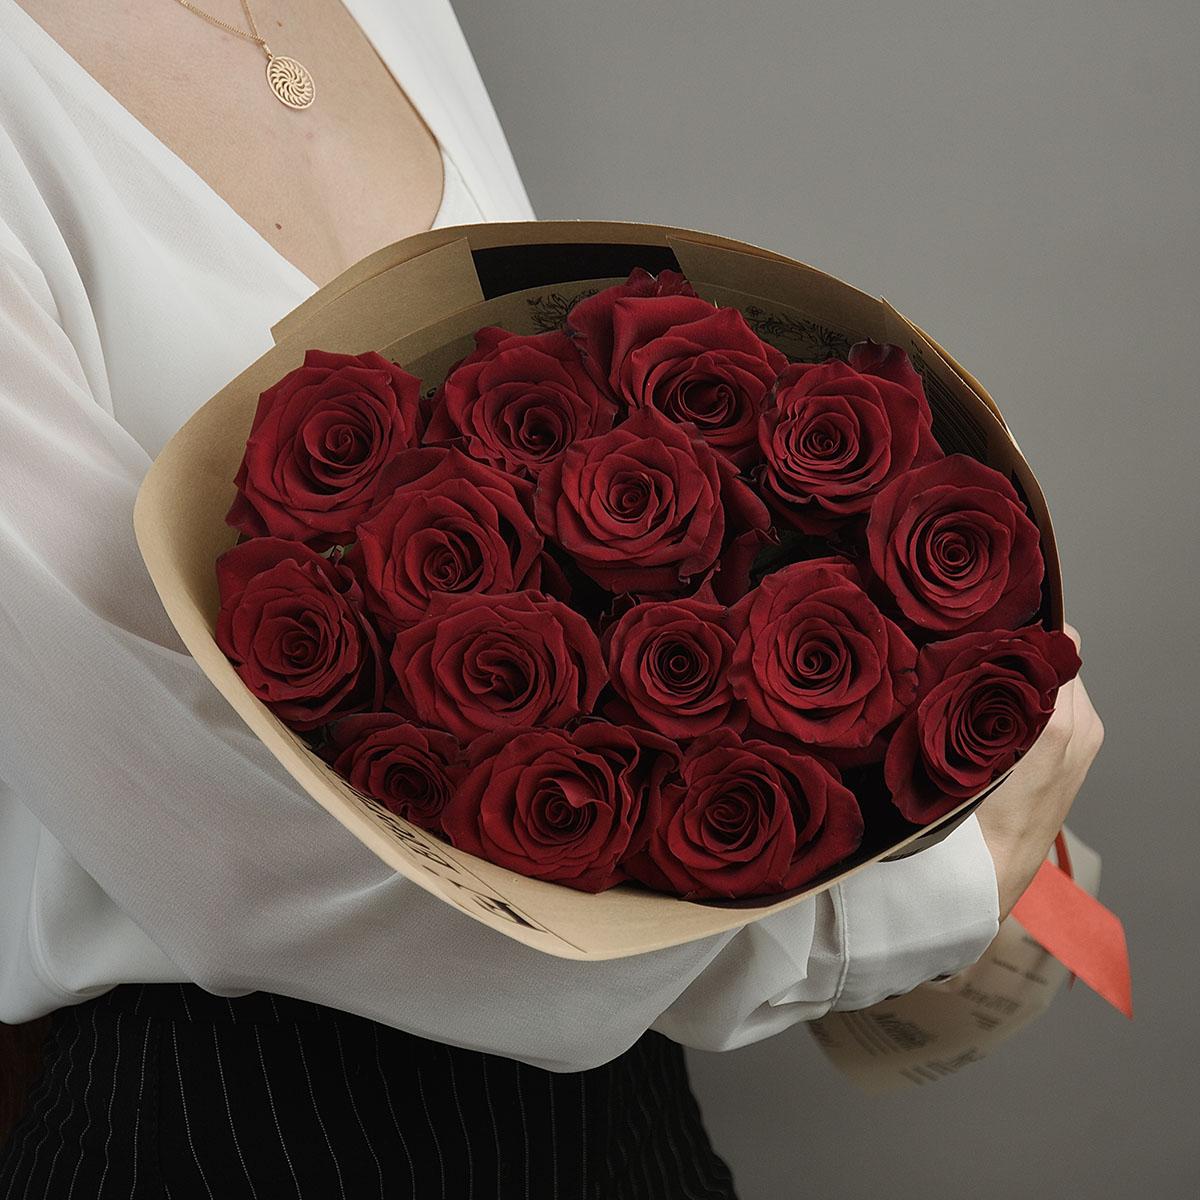 15 красных роз Эквадор